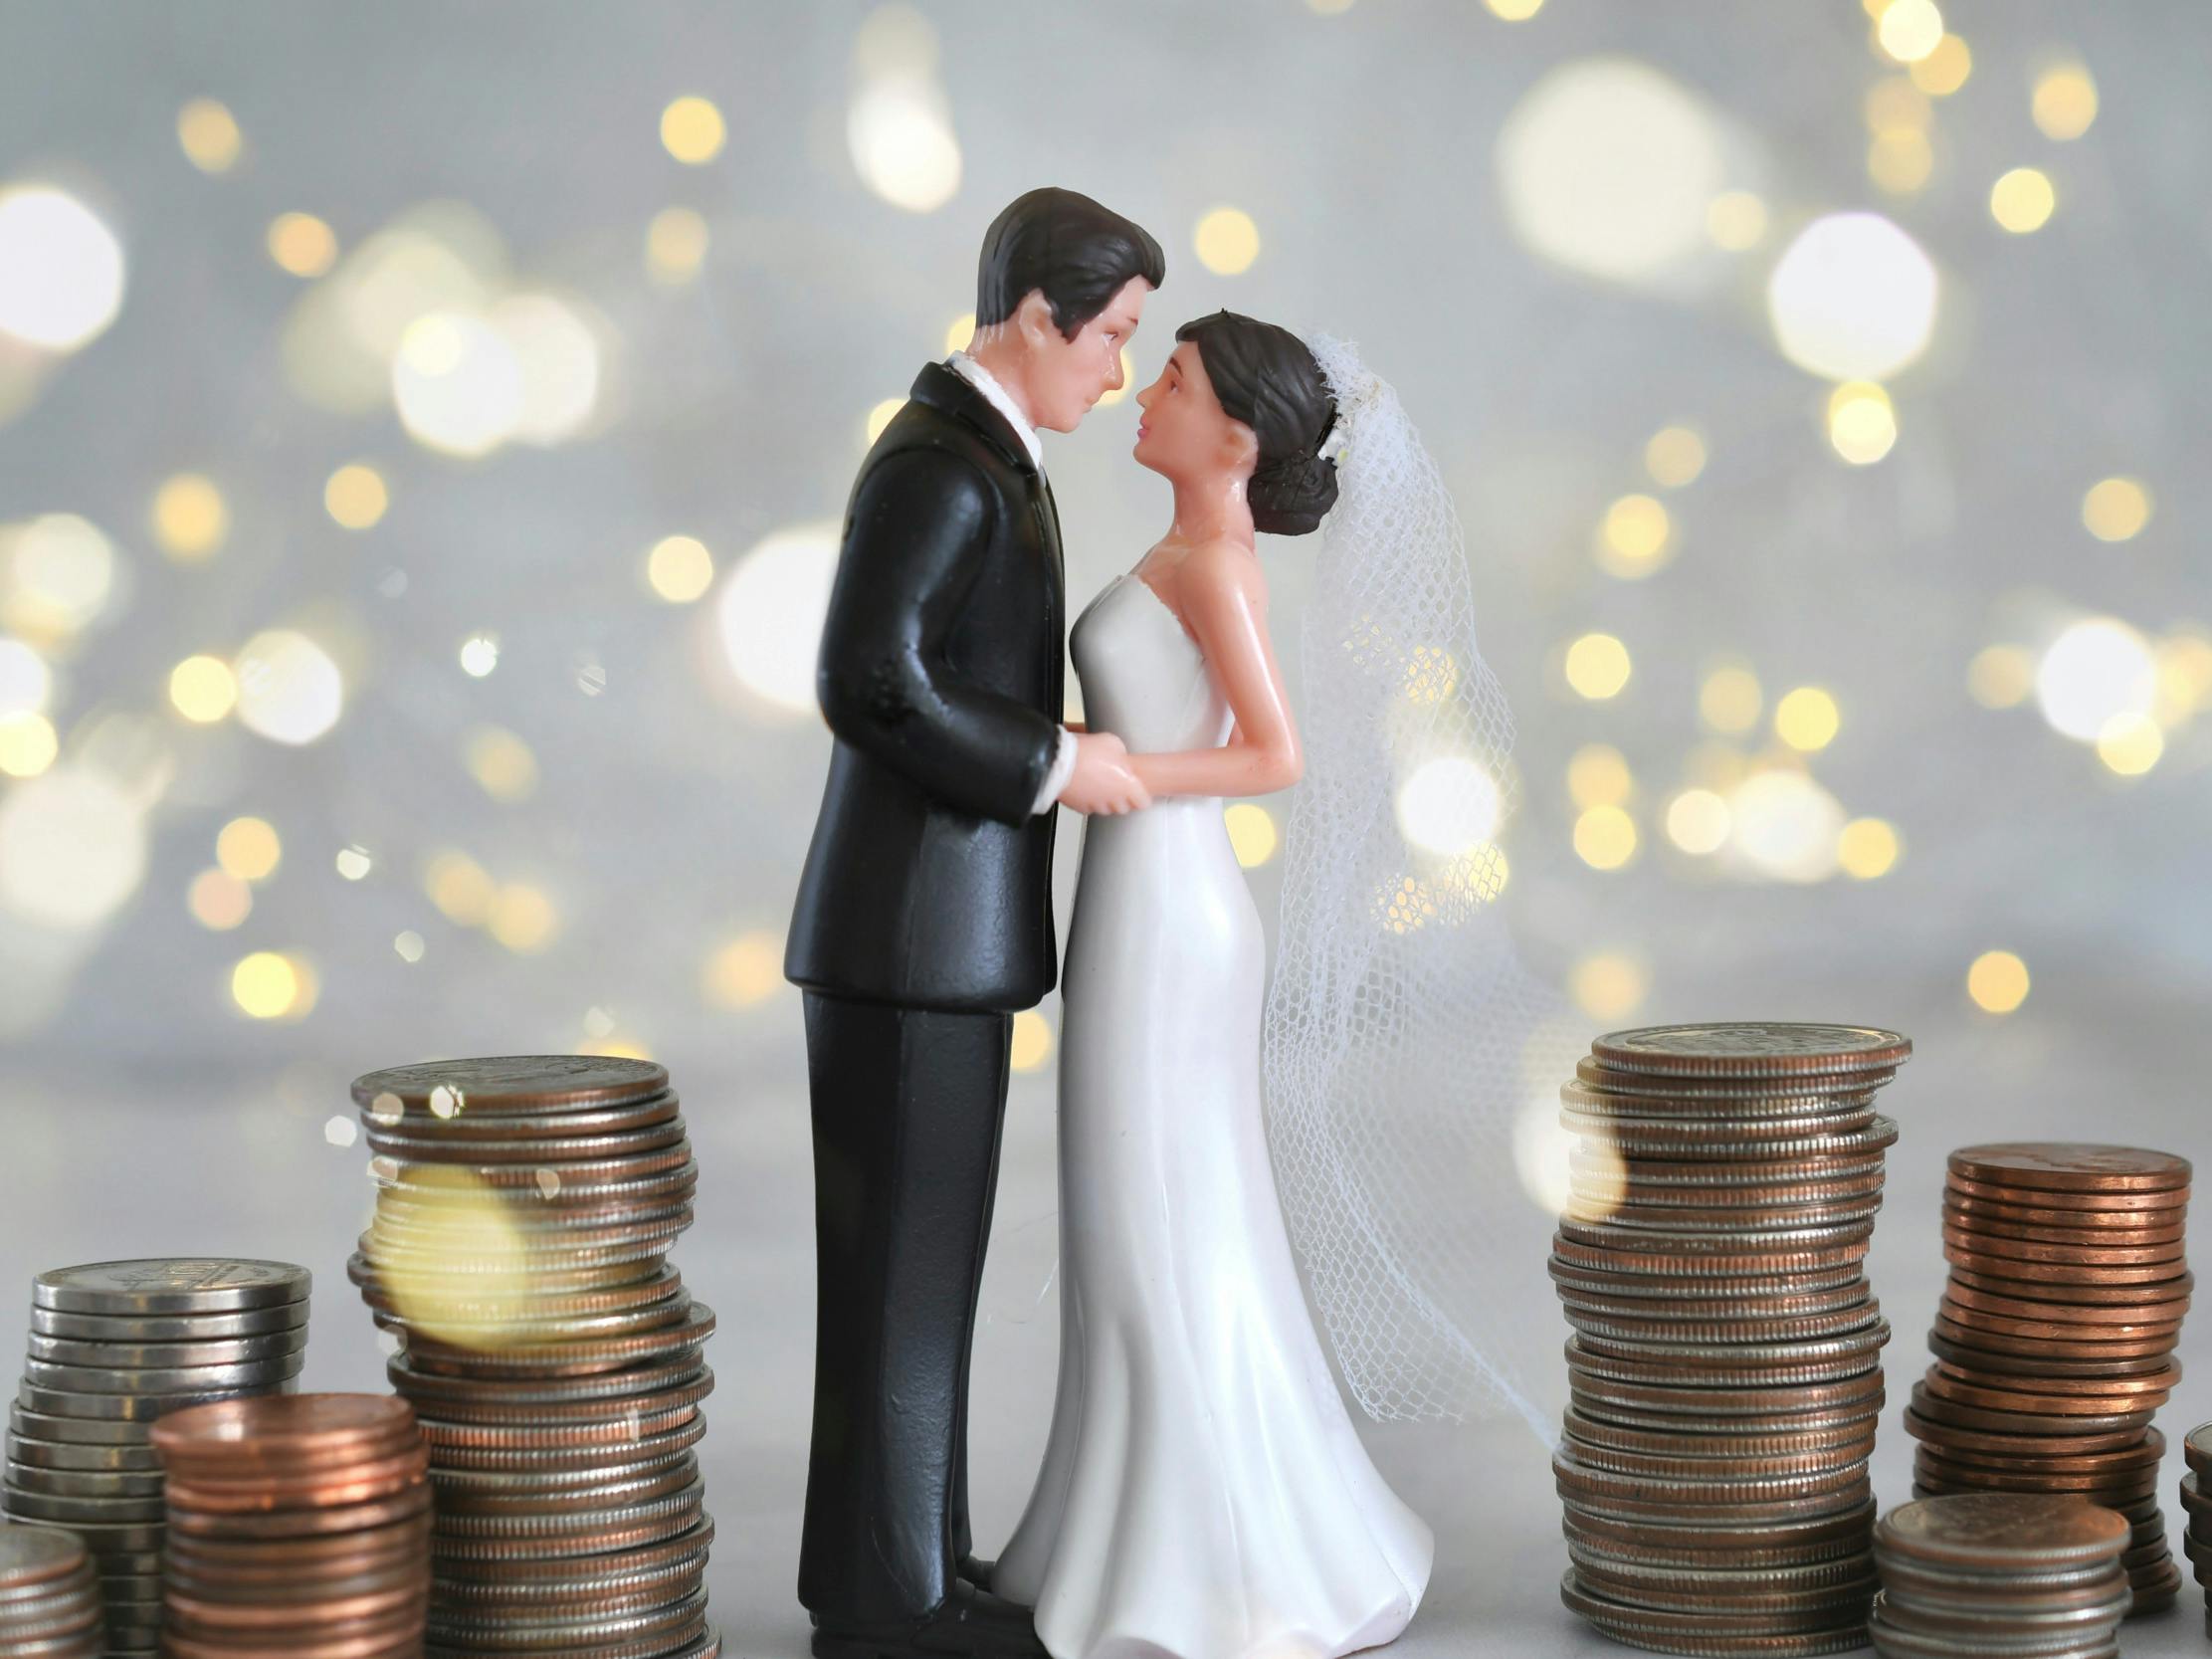 Figur af brudepar står mellem stakke af mønter